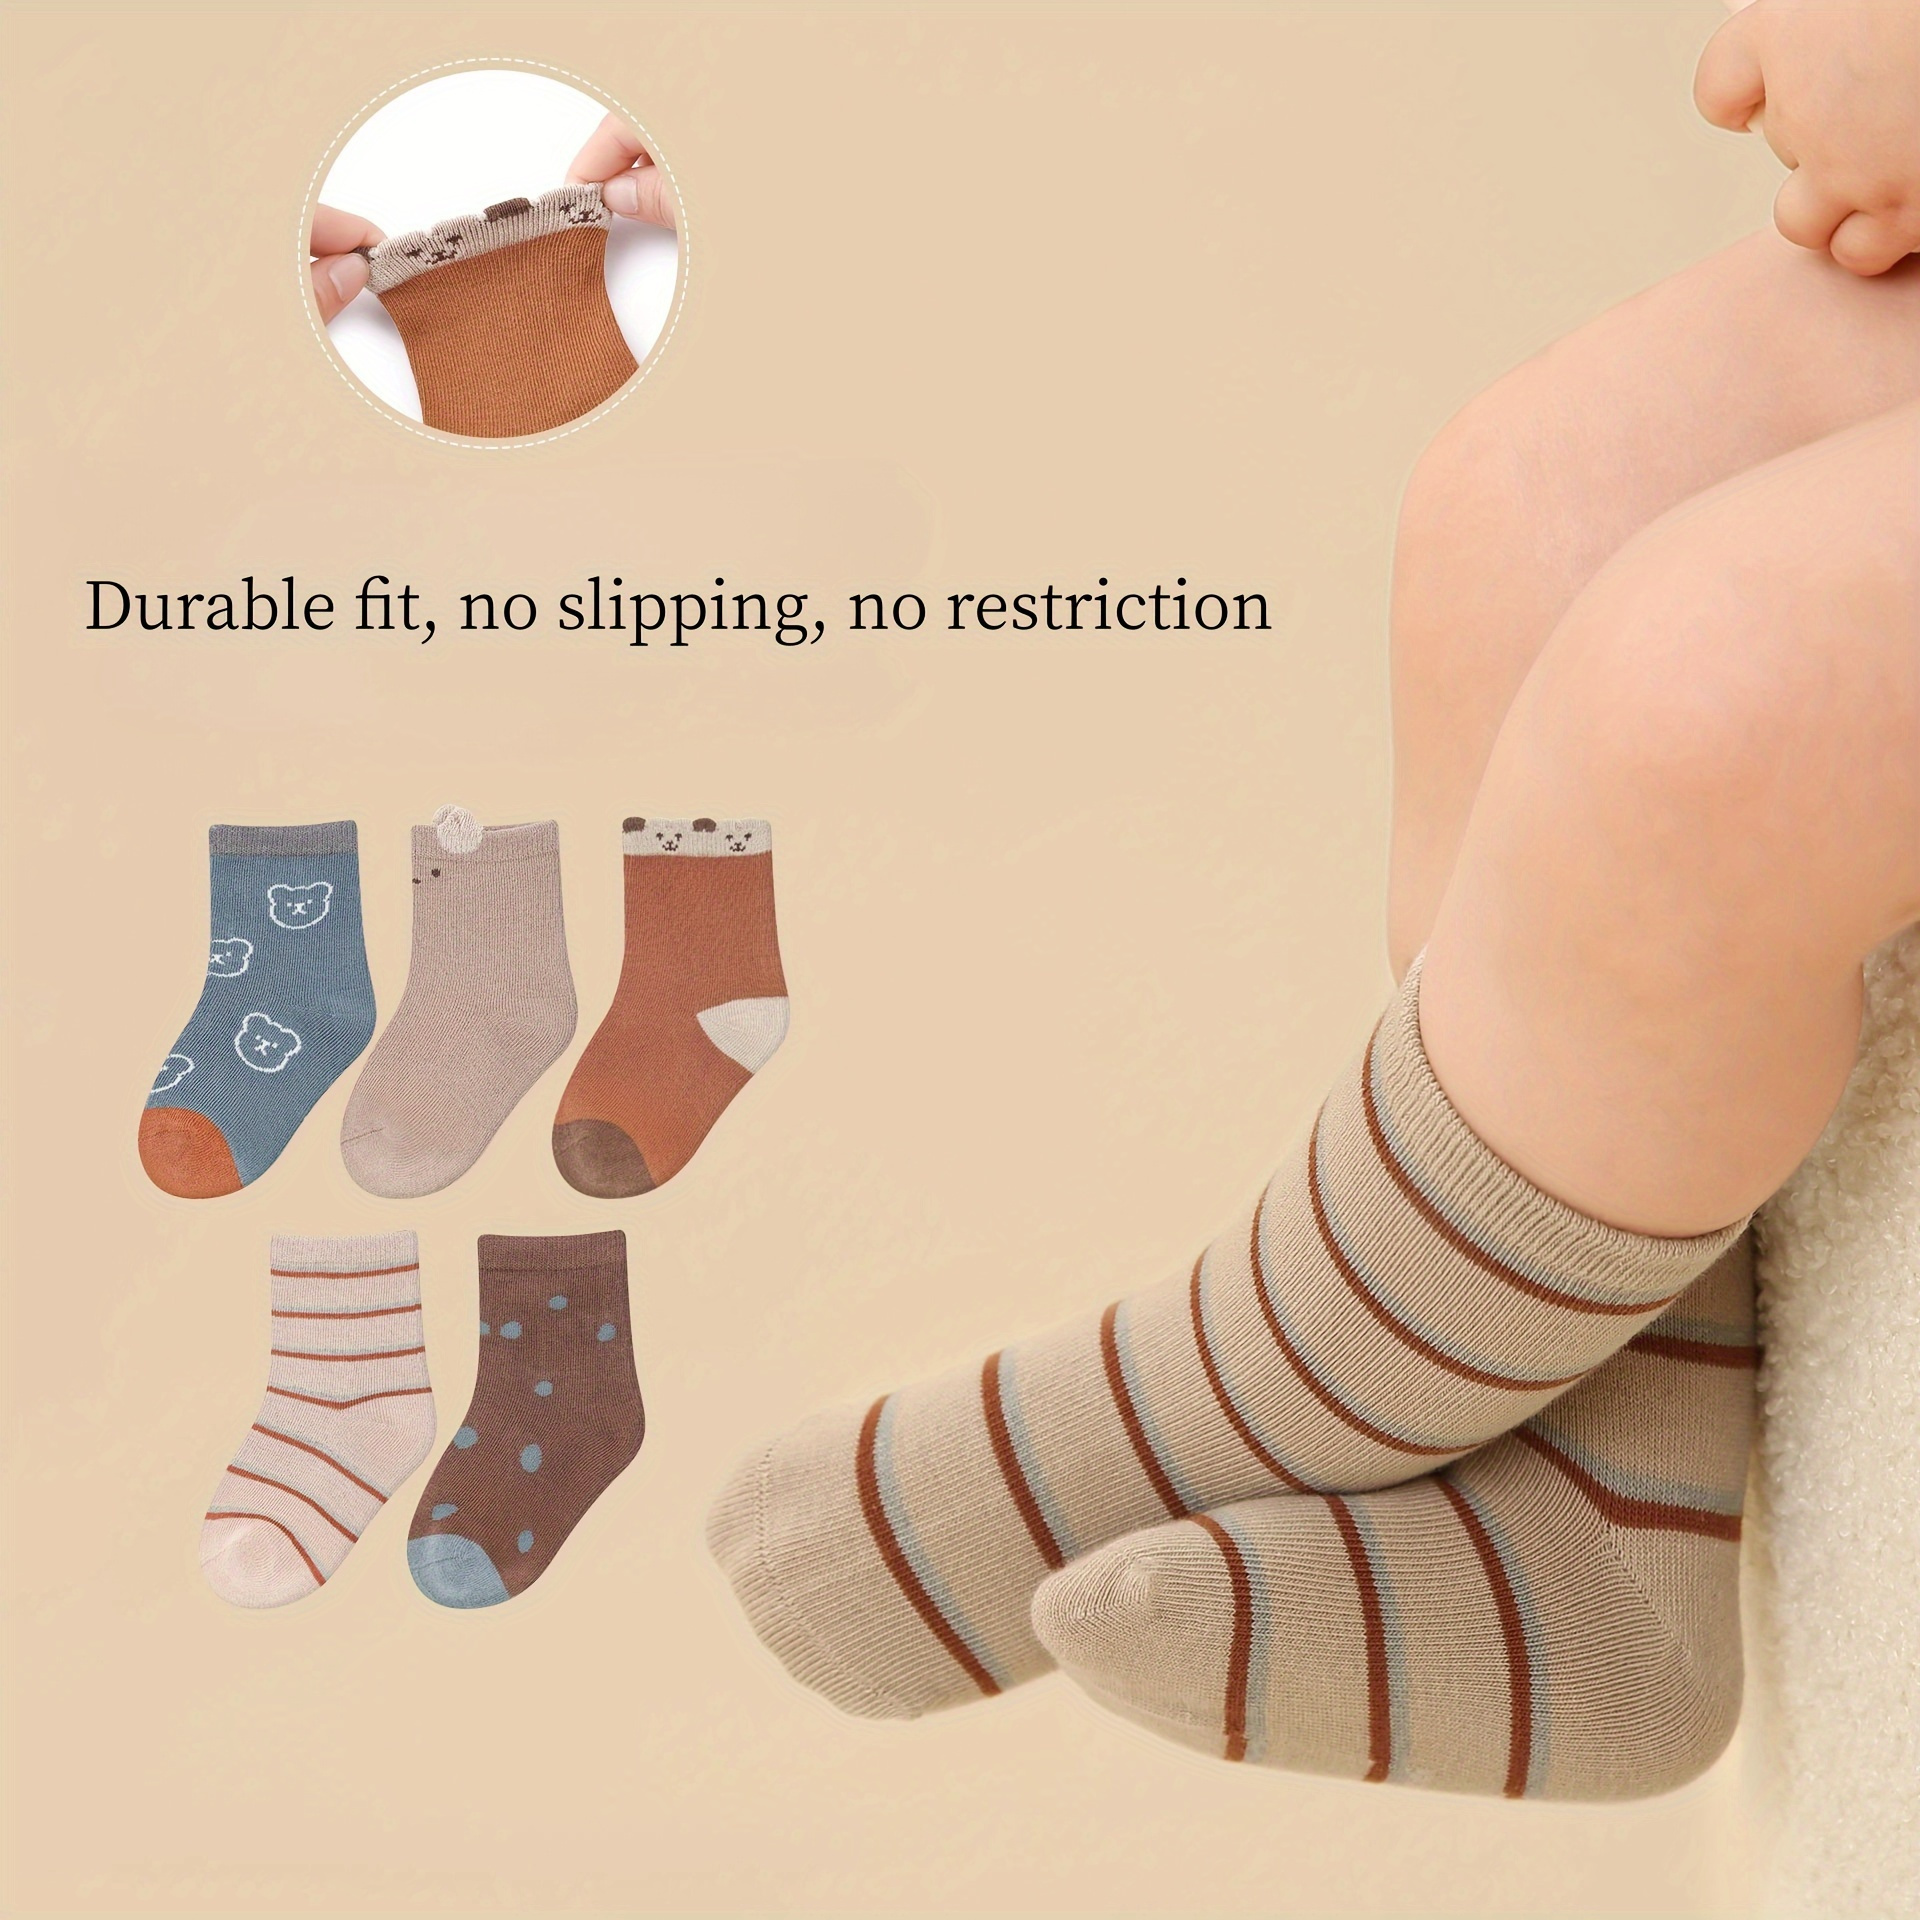 Chaussettes pour enfants 5 paires/lot chaussettes bébé nouveau-né hiver  automne chaussettes pour garçon fille dessin animé bébé garçon chaussettes  courtes pour 0-2 ans (couleur : chaussettes bébé7, taille enfant : 6-12 mois)  